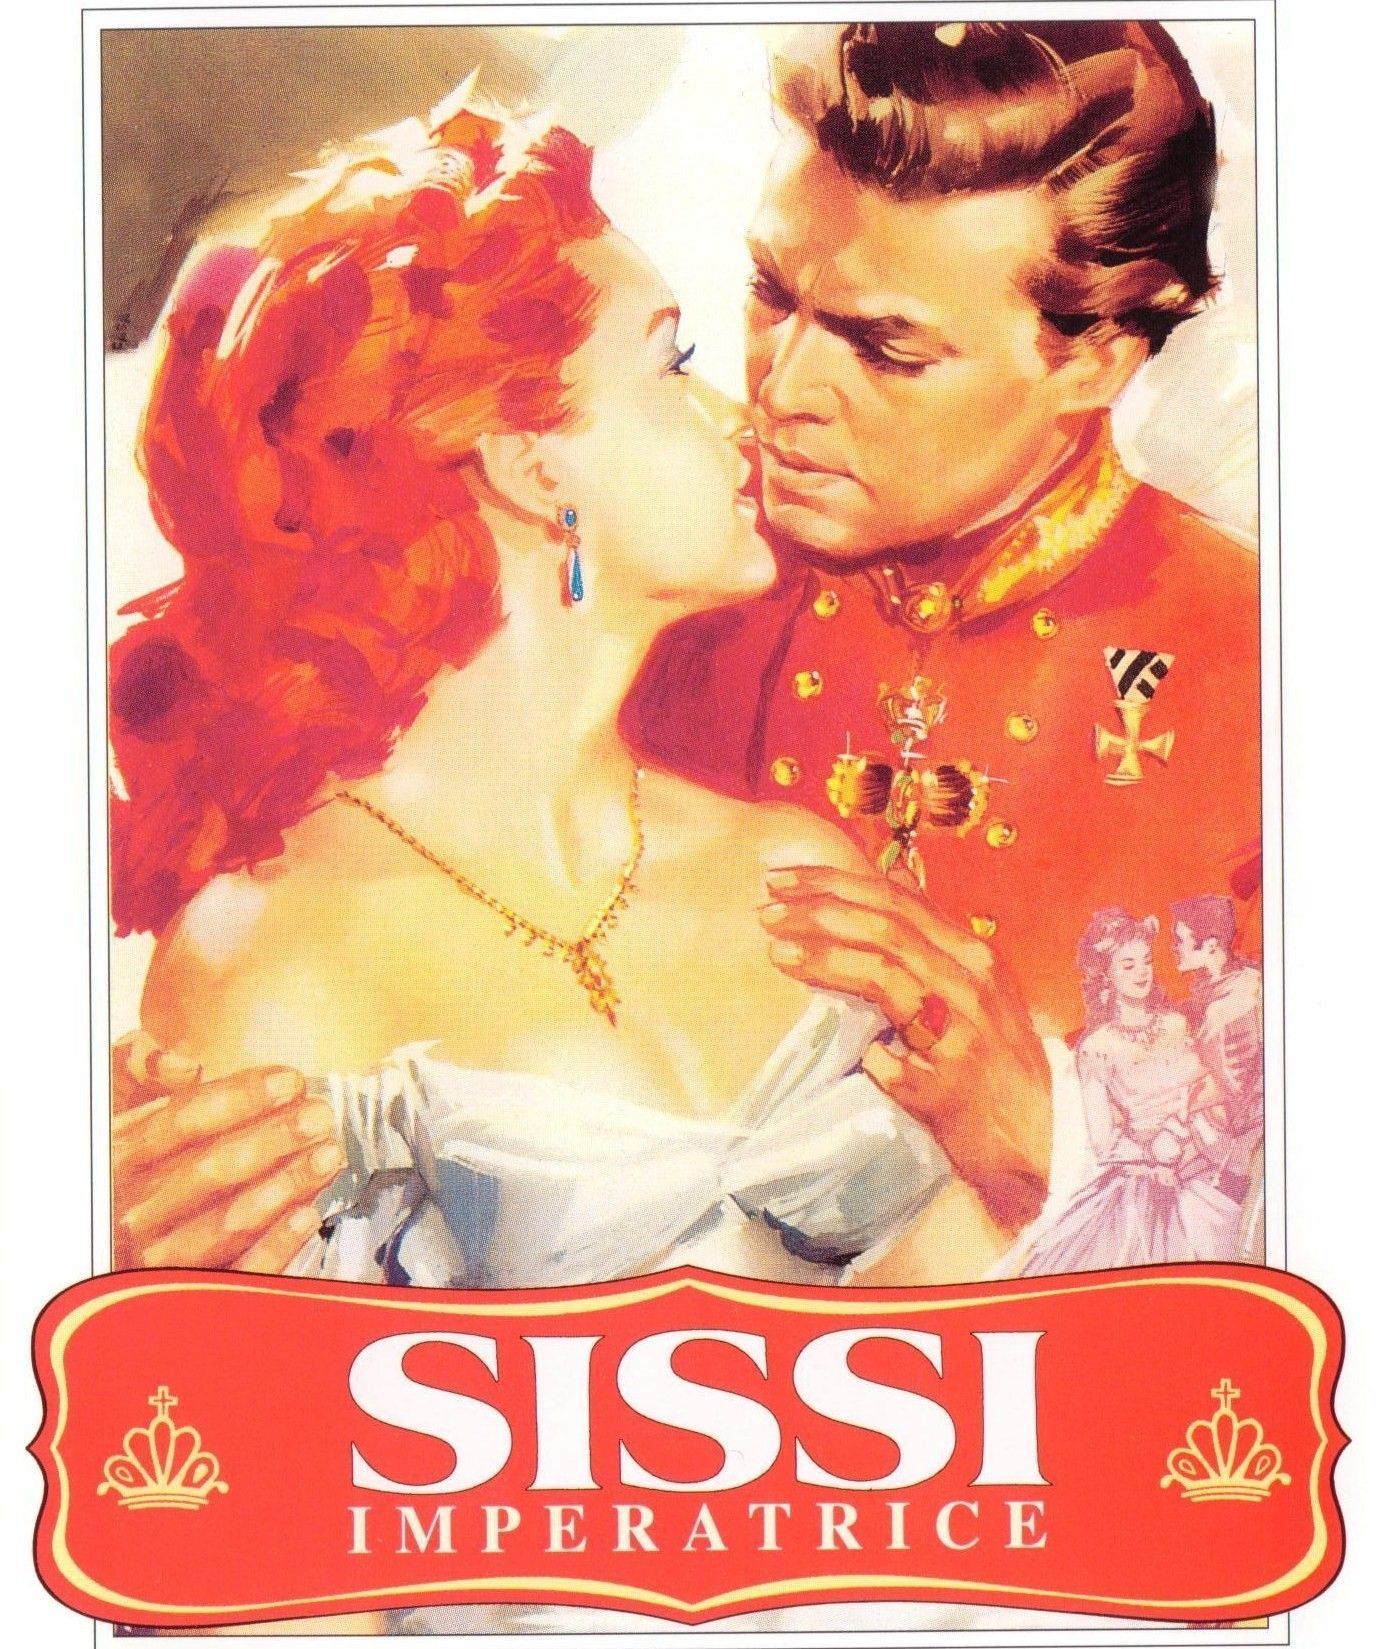 Сисси молодая Императрица фильм 1956 Постер